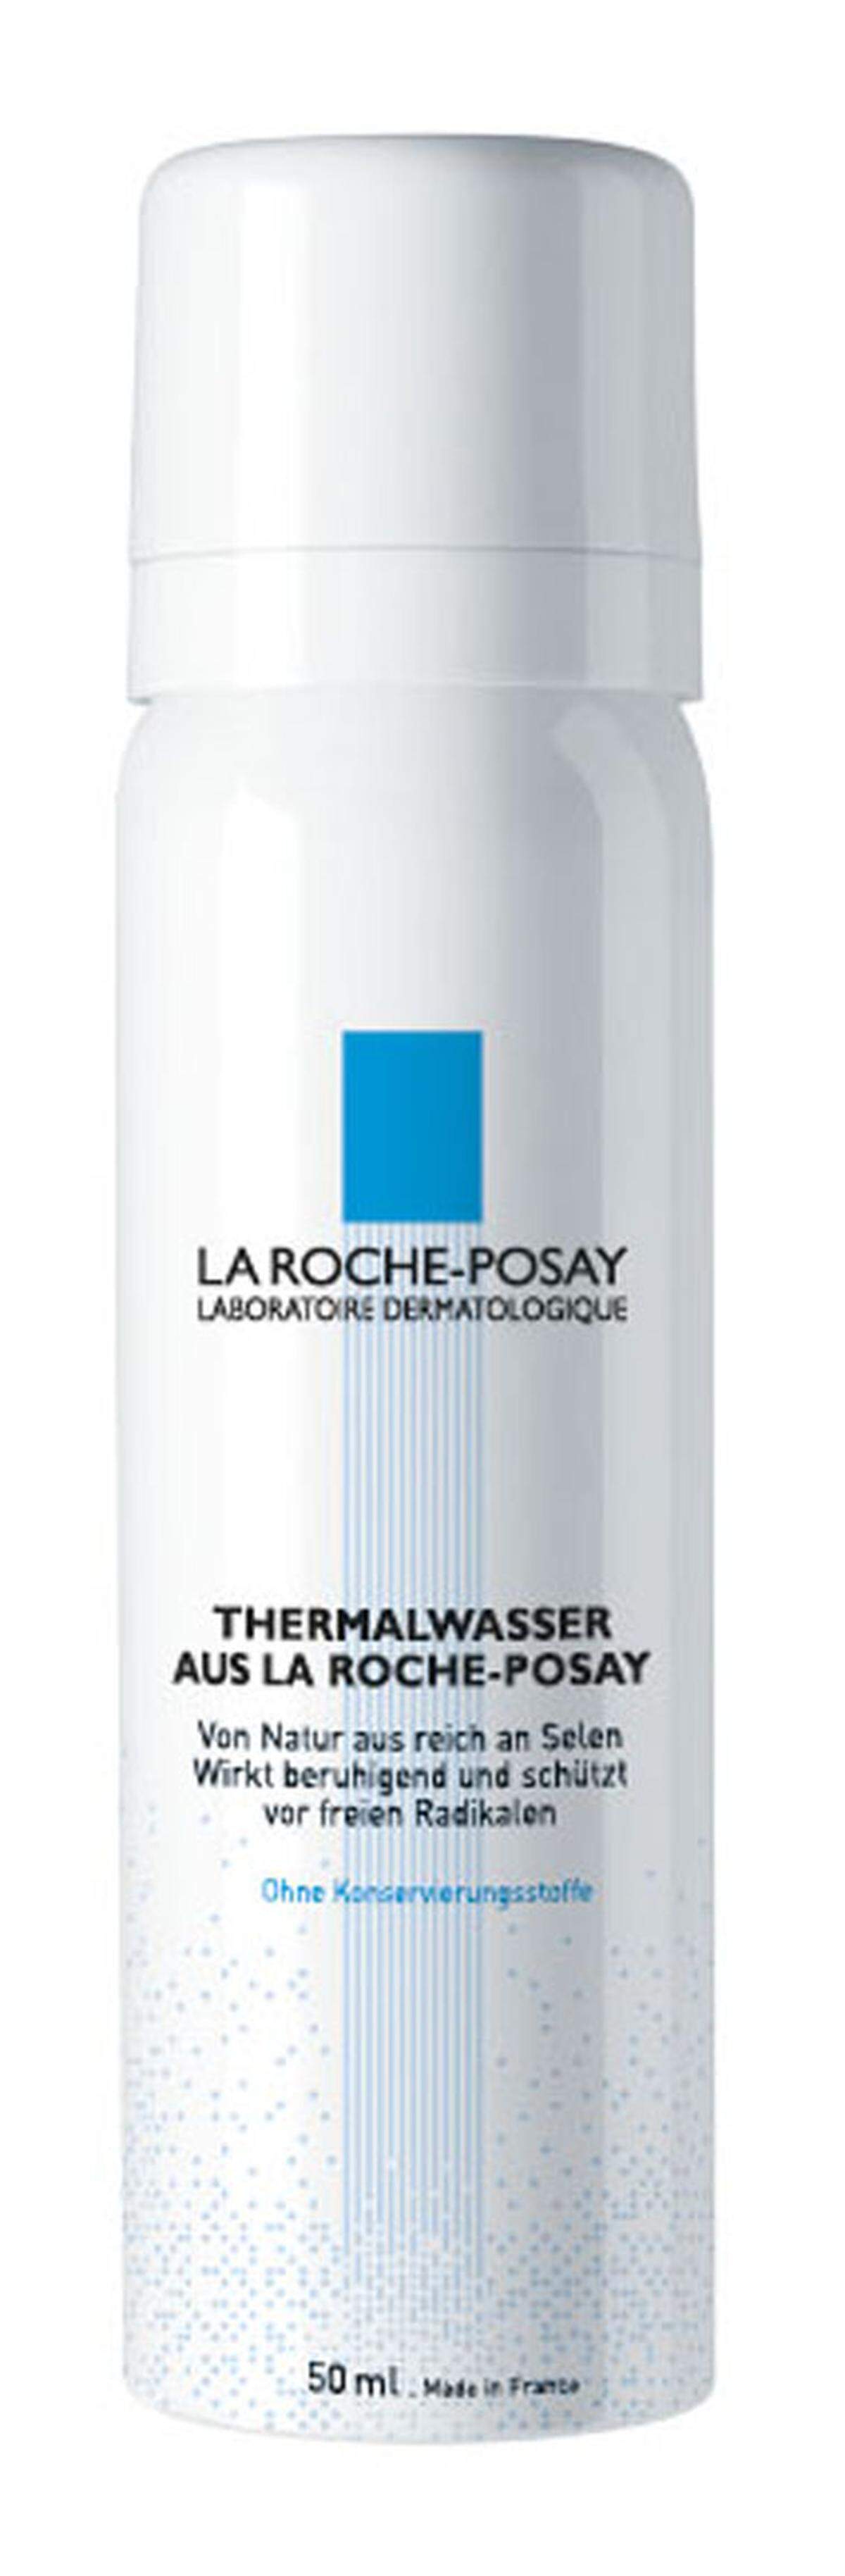 Immer in der Tasche haben sollte man bei hohen Temperaturen erfrischende Thermalwassersprays, etwa von La Roche-Posay. Besondere Abkühlung bietet er, wenn man ihn im Kühlschrank aufbewahrt. In der Apotheke ab 2,50 Euro erhältlich.